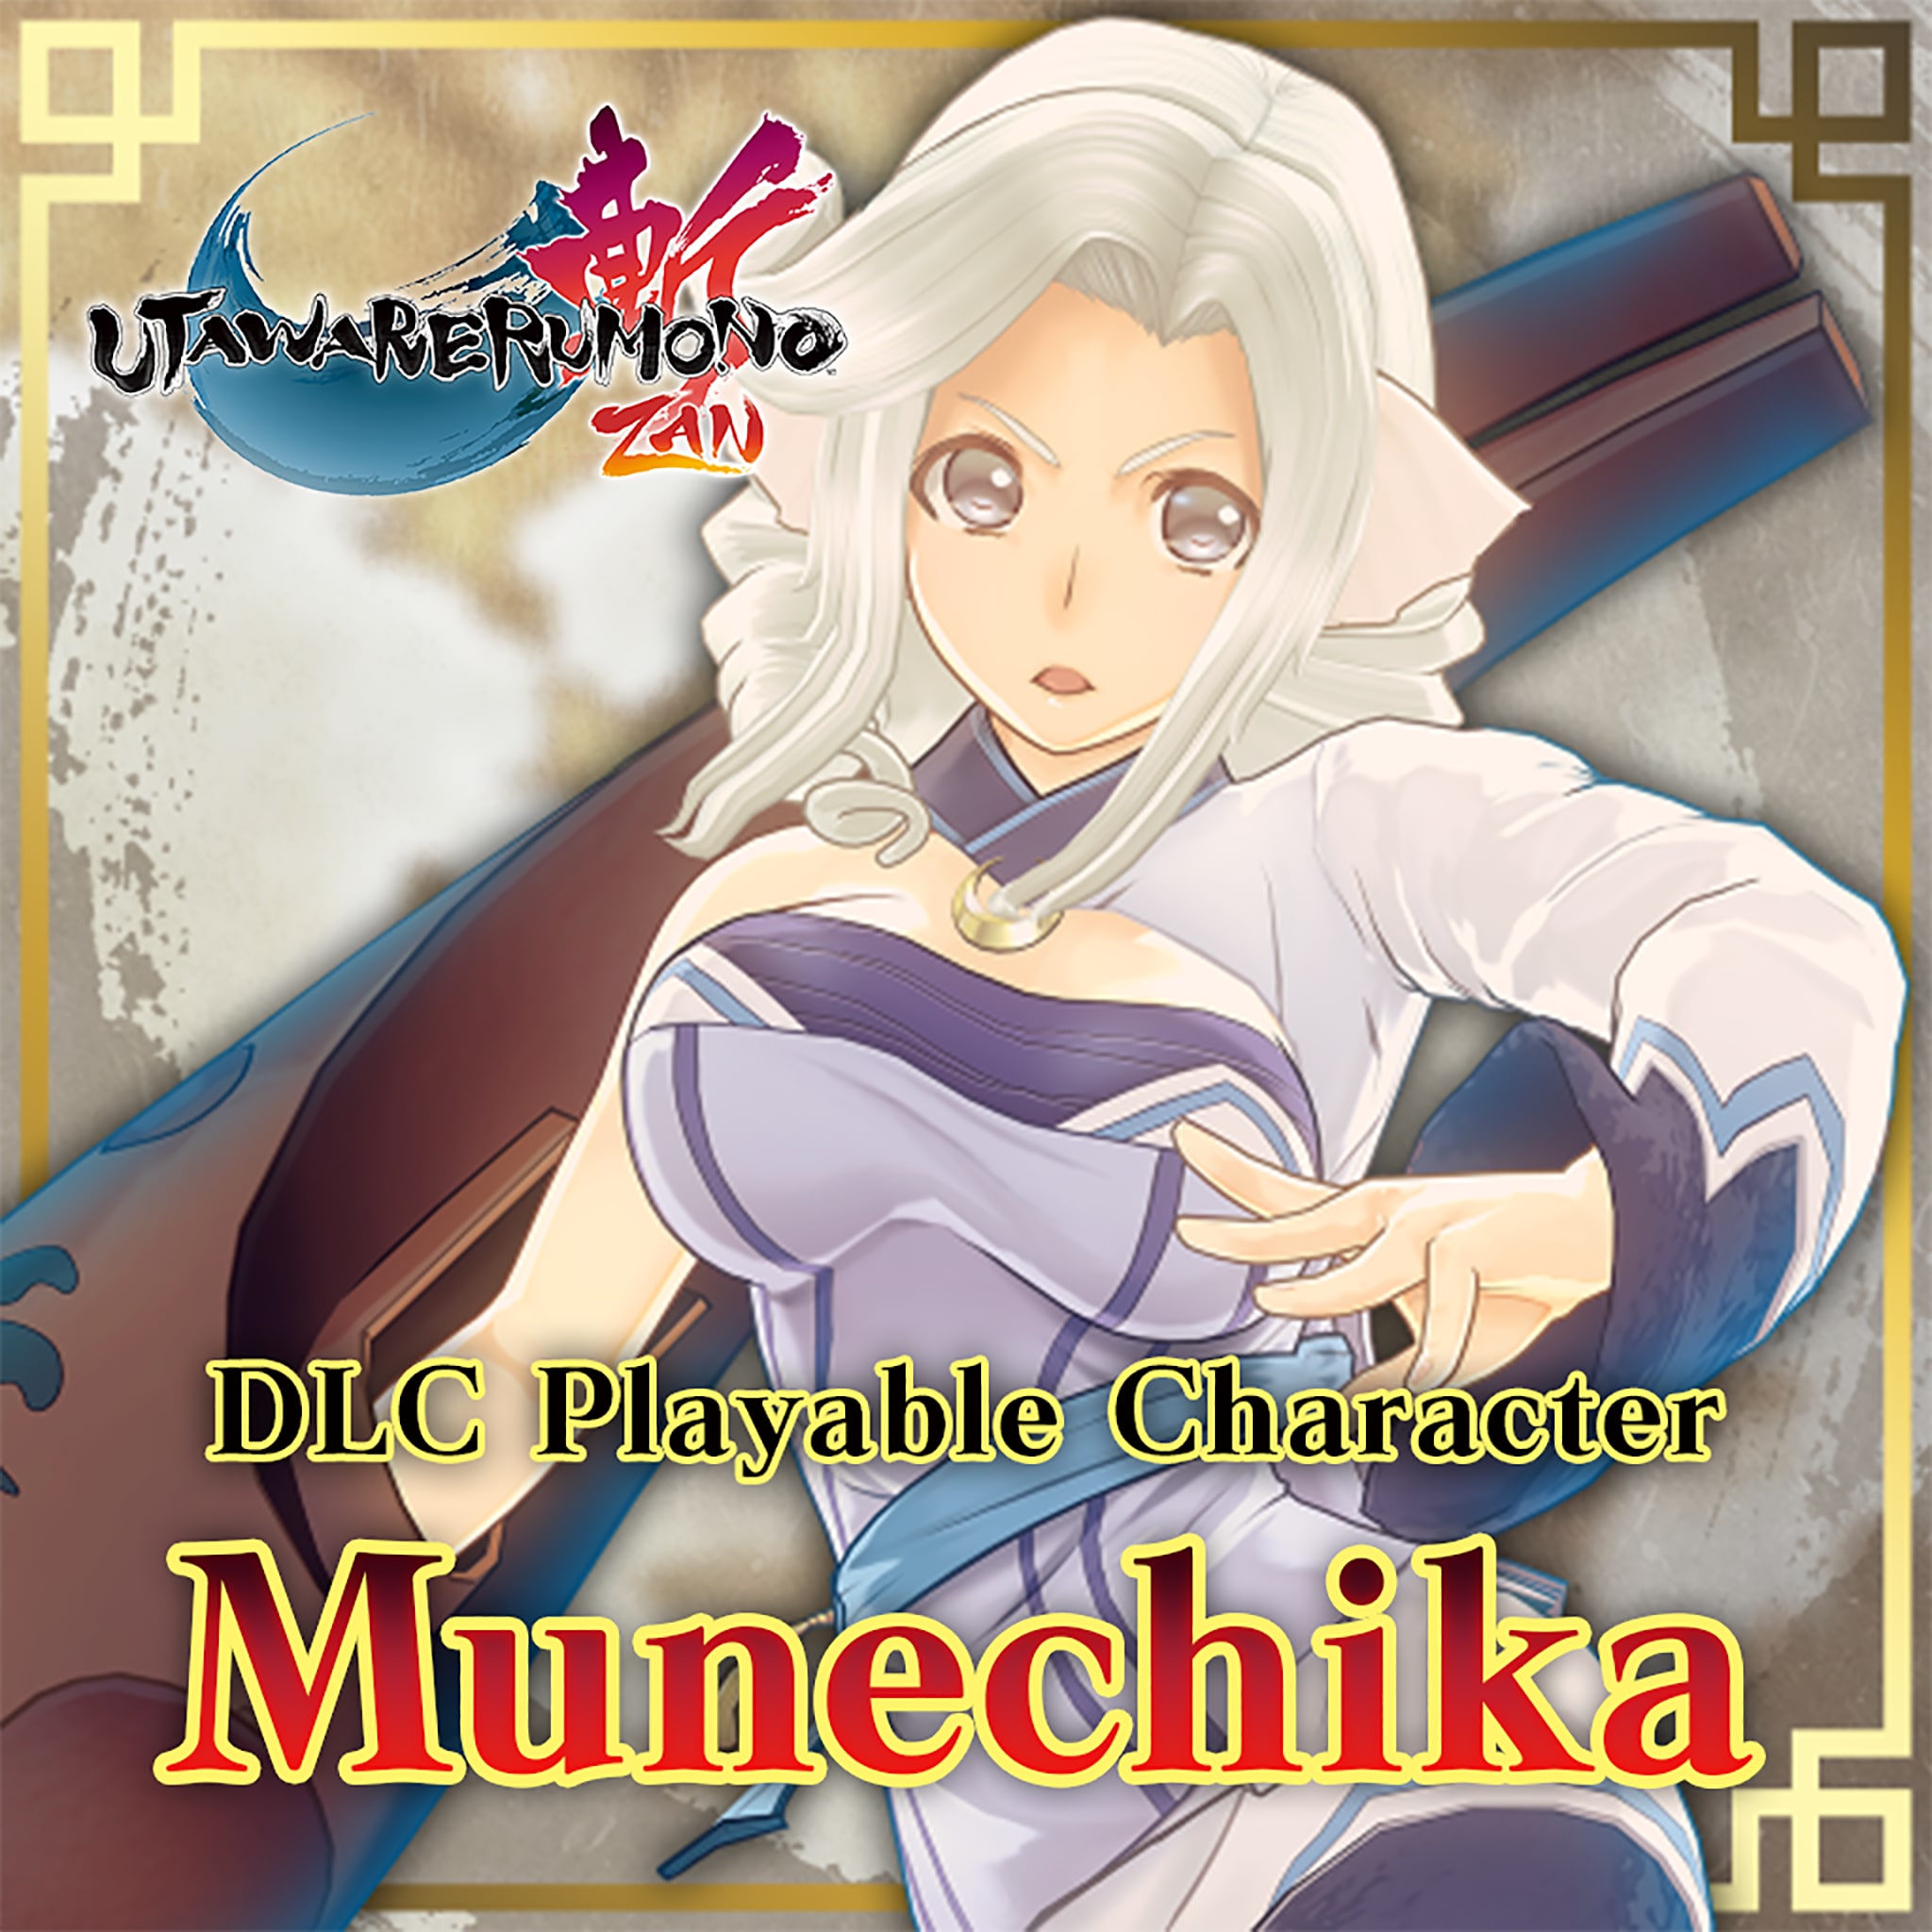 Utawarerumono: ZAN Playable Character - Munechika